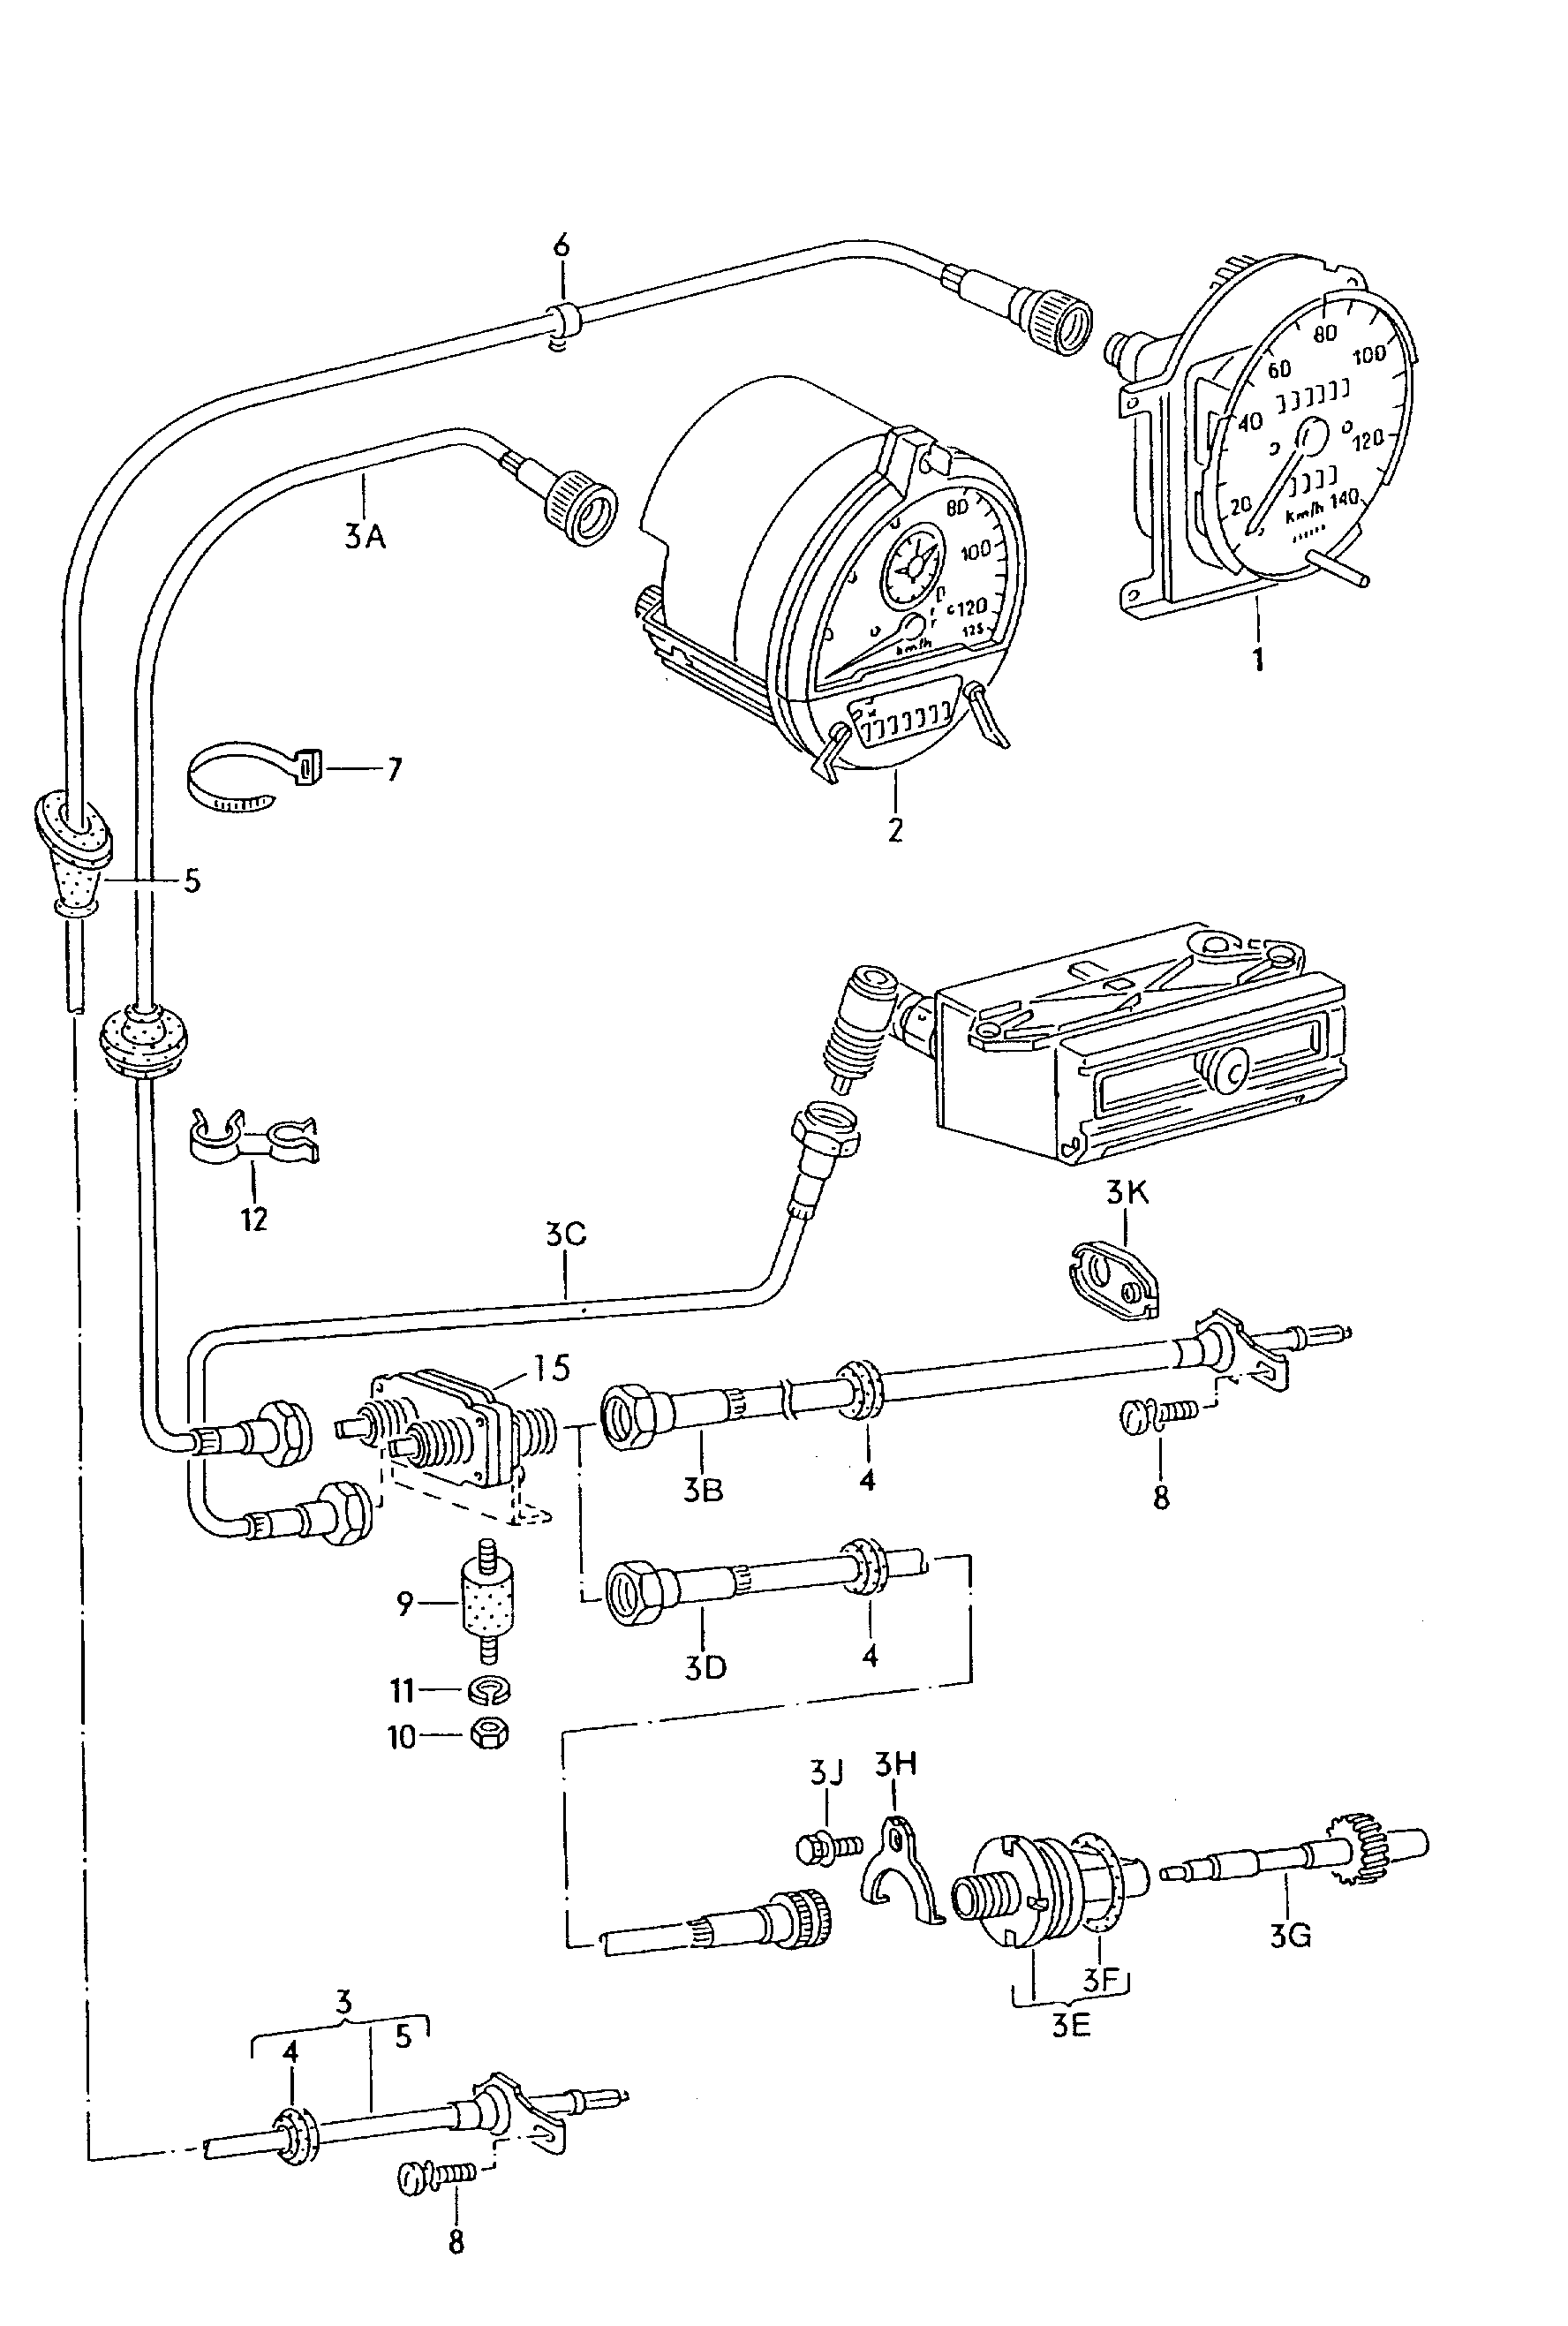 Geschwindigkeitsmesser(Schraubanschluss)Fahrtenschreiber(Steckanschluss)  - LT, LT 4x4 - lt